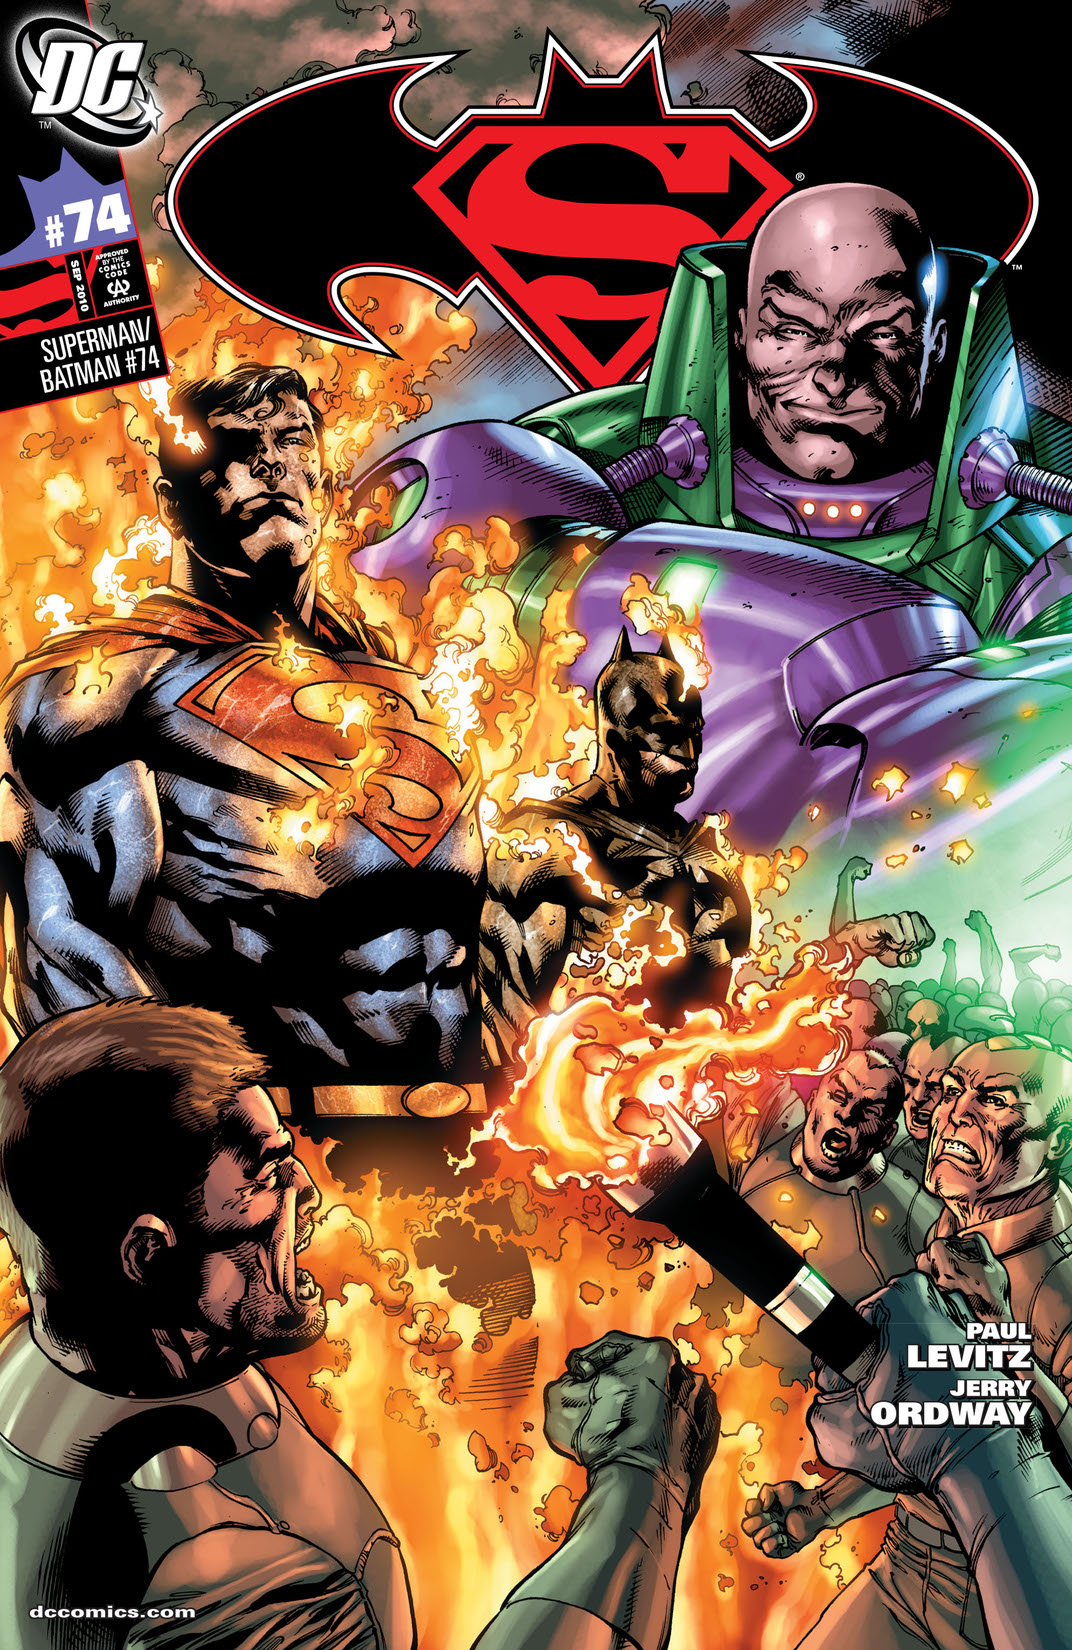 Superman/Batman #74 preview images